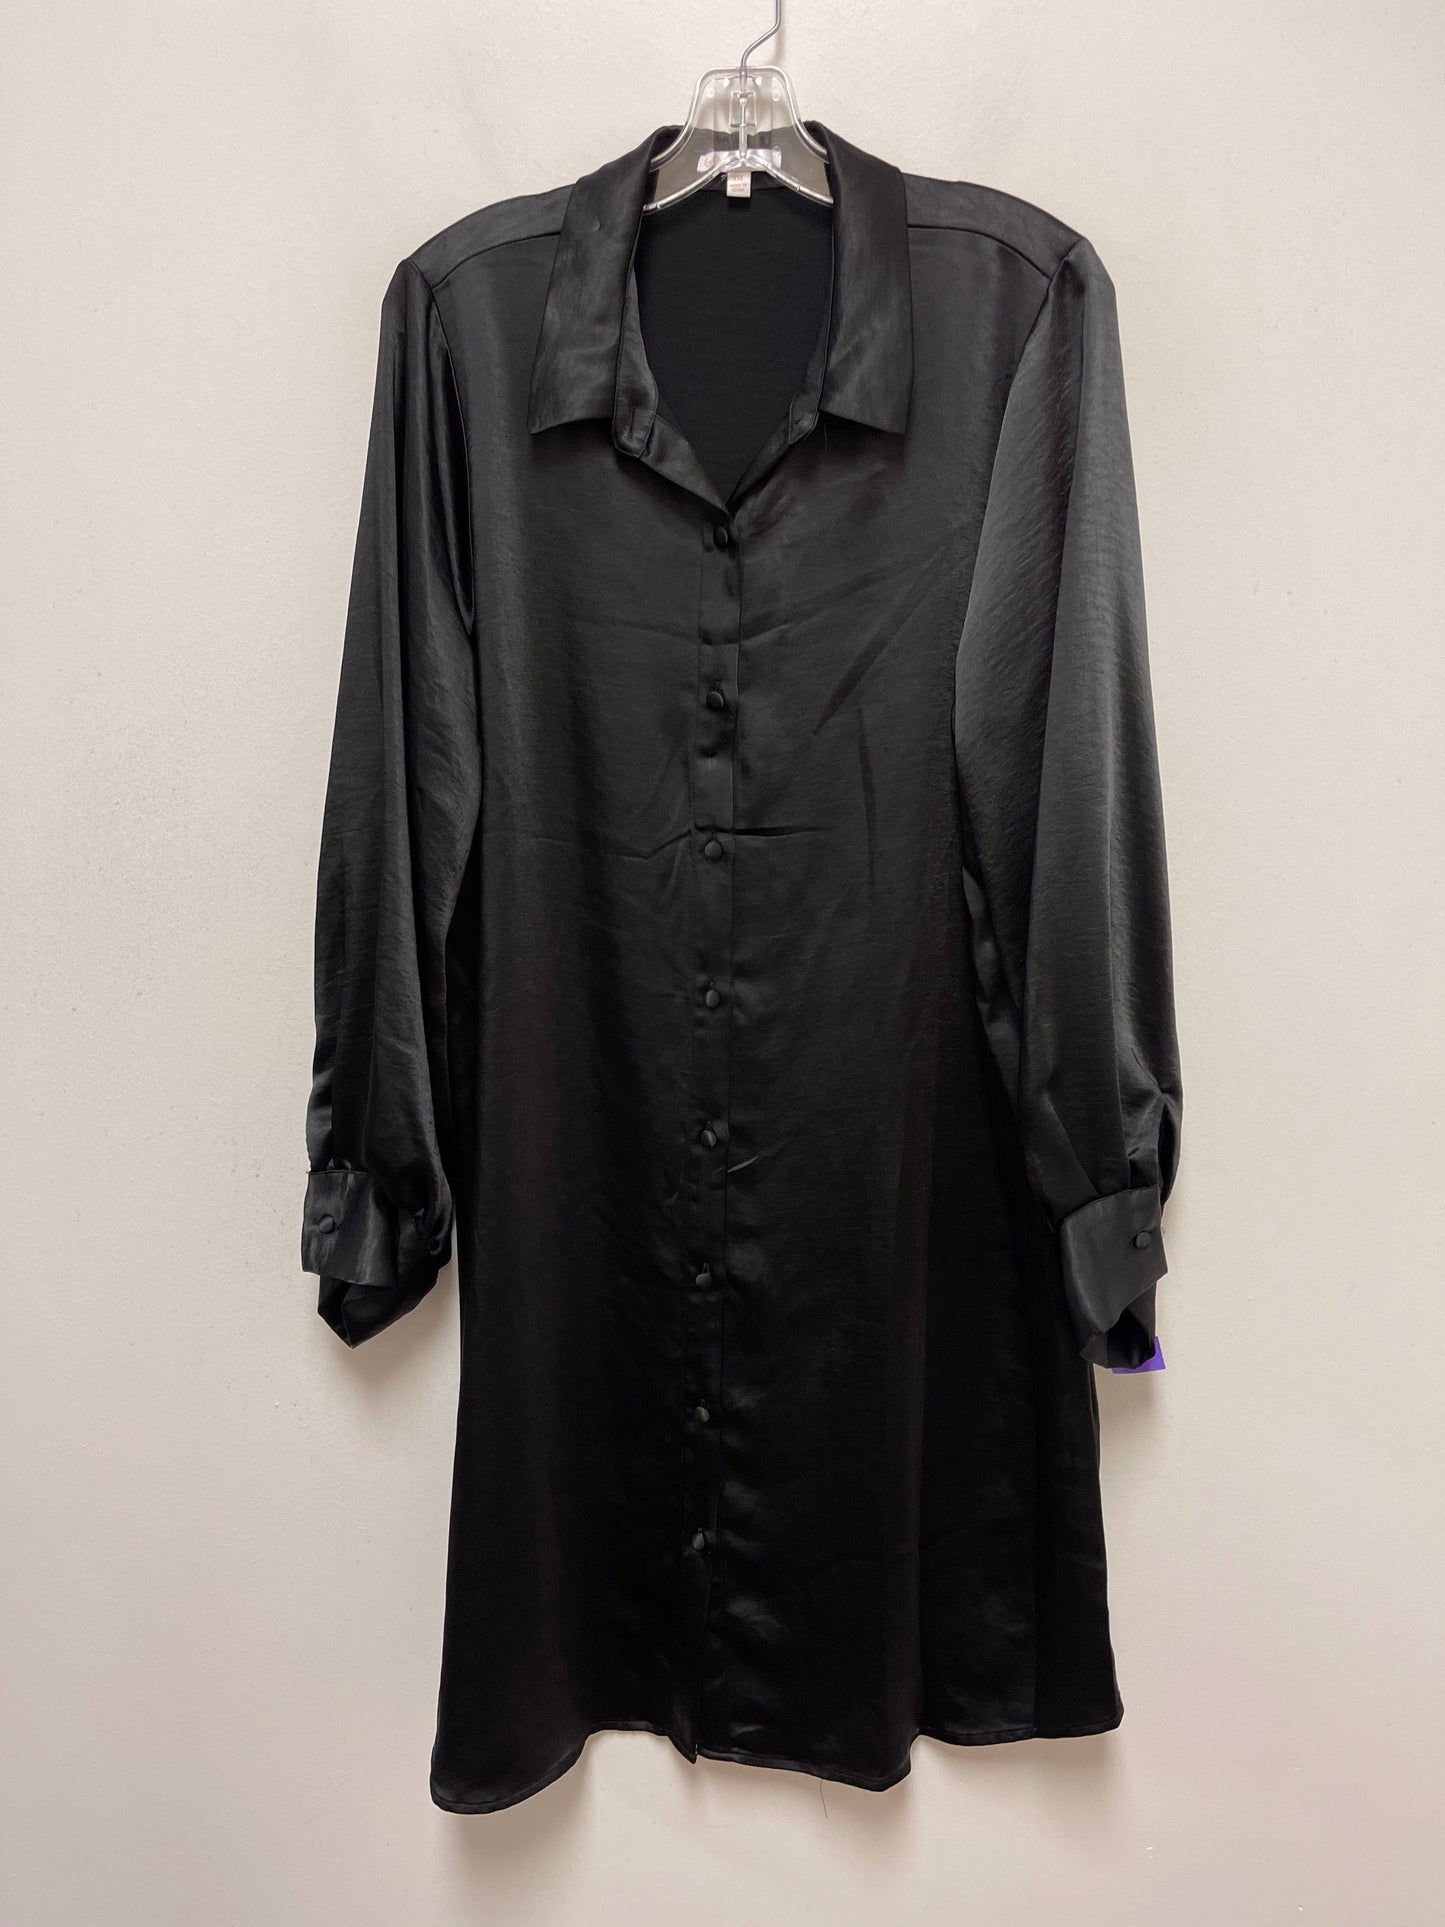 Black Dress Casual Midi Gianni Bini, Size 2x